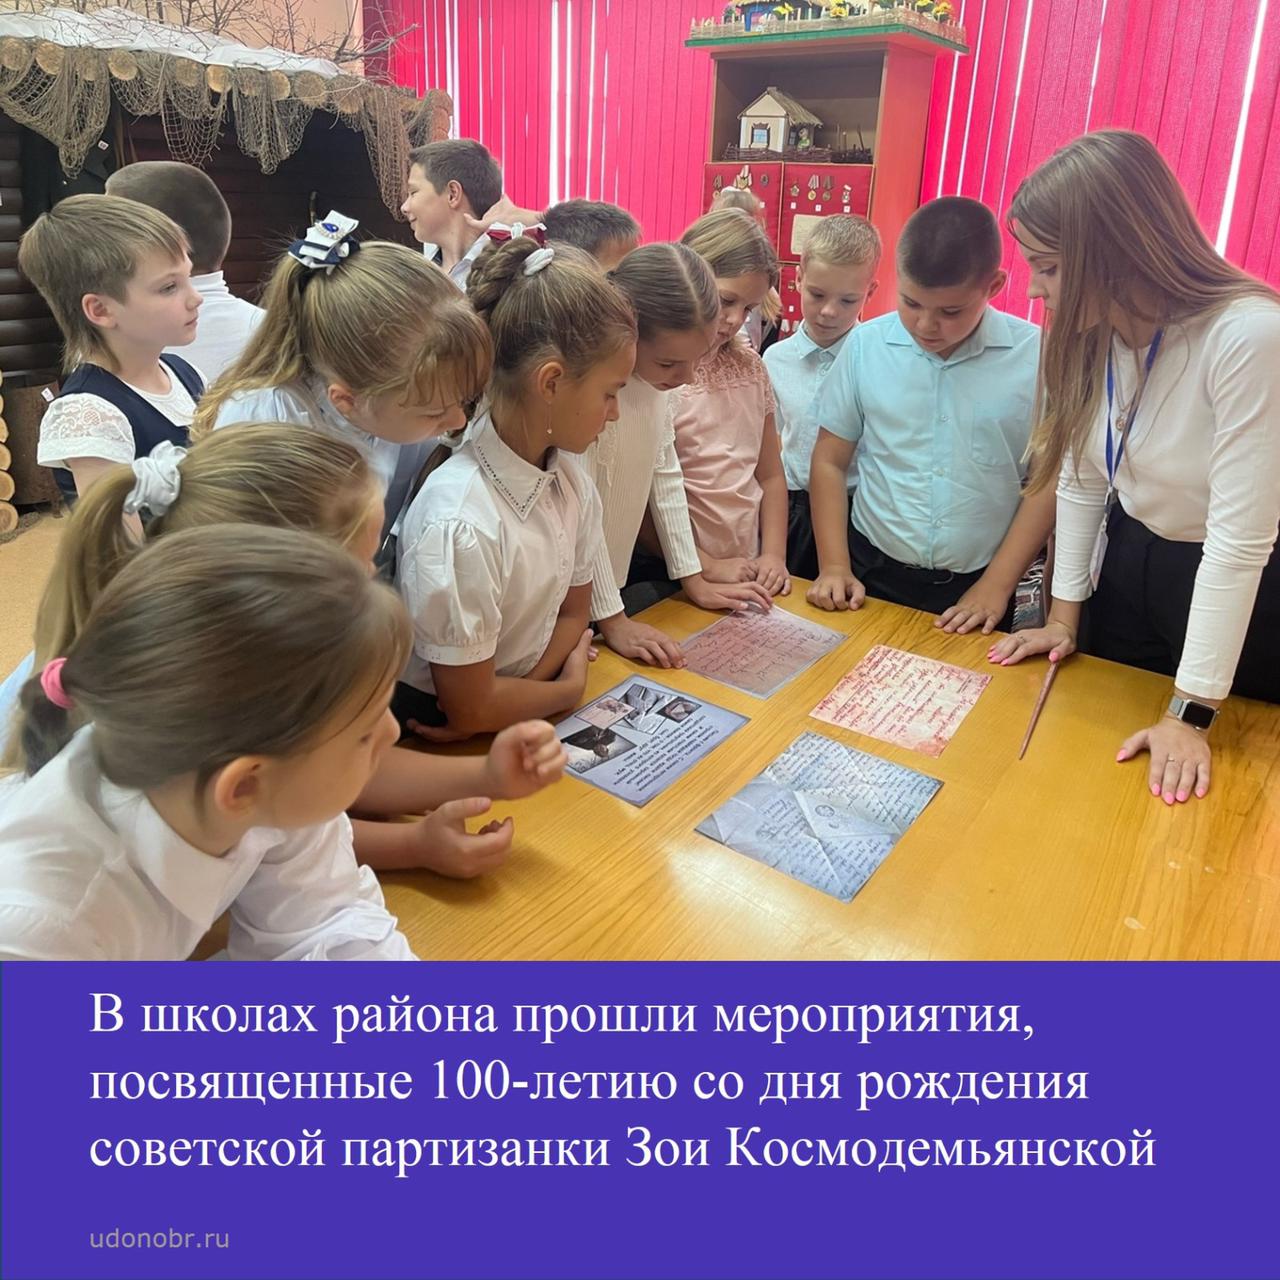 В школах района прошли мероприятия, посвященные 100-летию со дня рождения советской партизанки Зои Космодемьянской